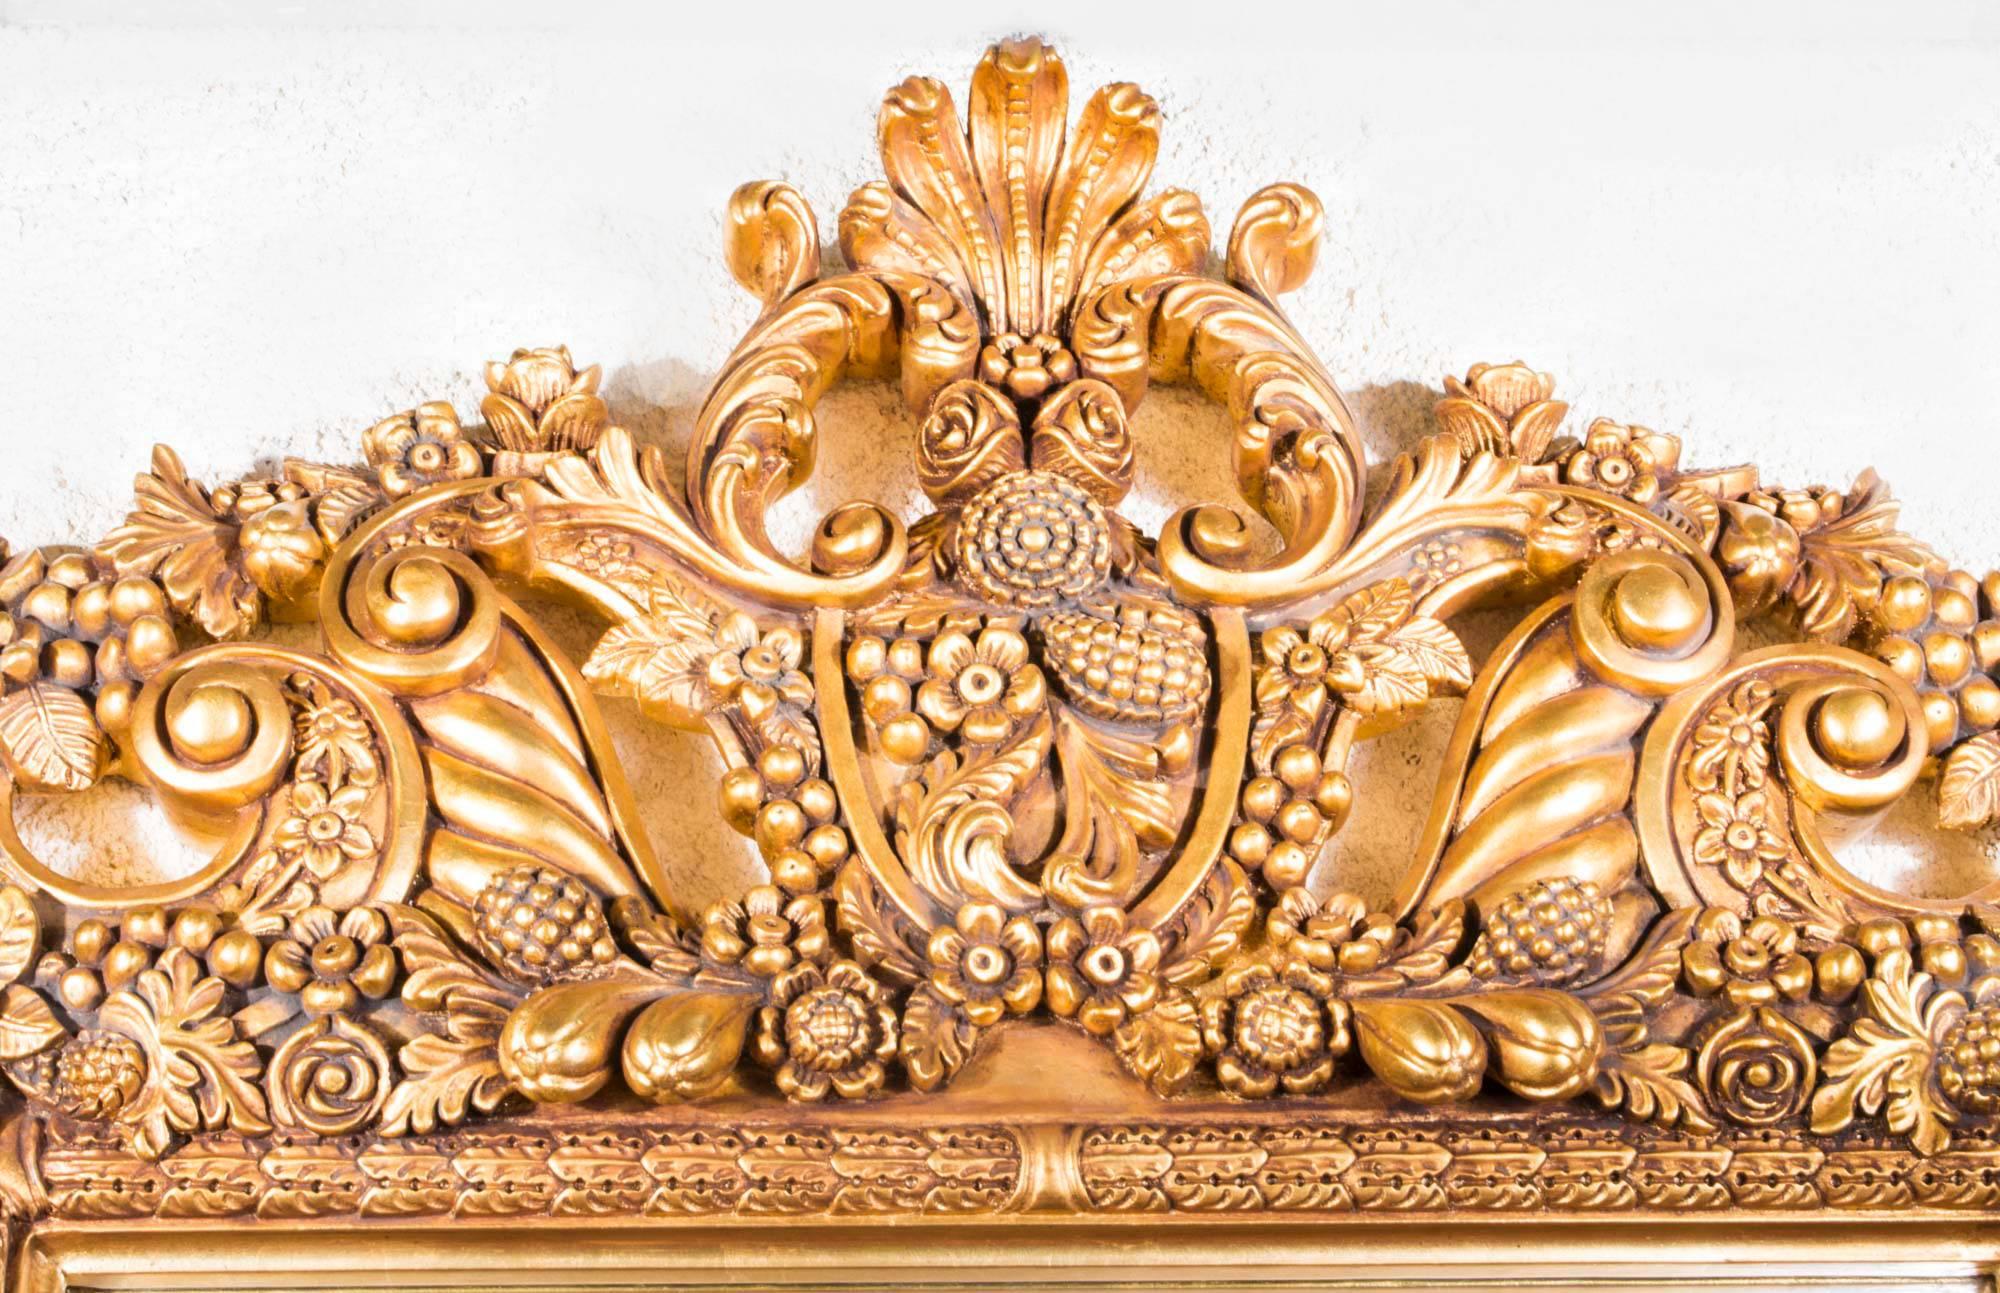 Il s'agit d'un superbe miroir florentin en bois doré ancien très élaboré datant du dernier quart du 20ème siècle. 

Il sera certainement un ajout charmant à cette pièce spéciale de votre maison.

Le style florentin désigne l'art et l'architecture